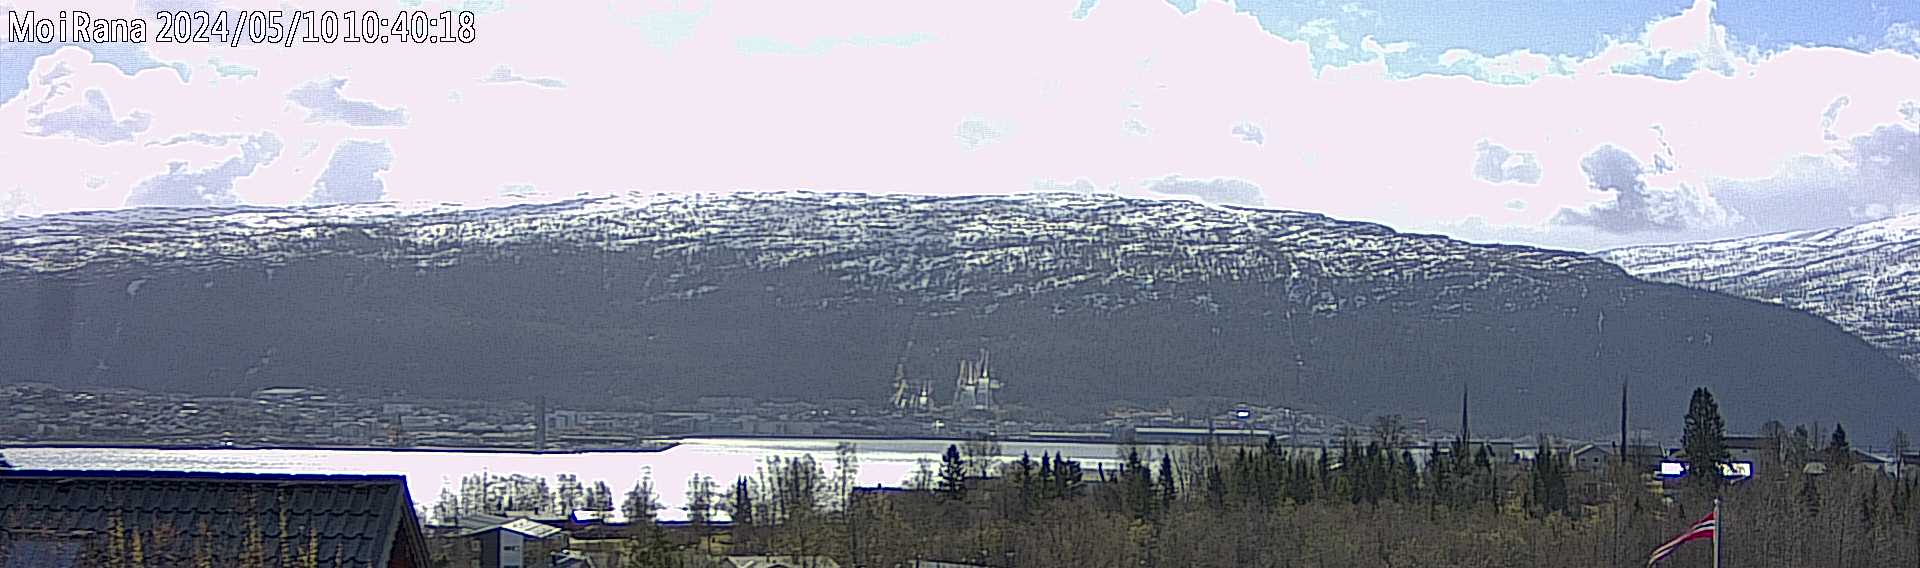 Webcam Mo i Rana, Rana, Nordland, Norwegen